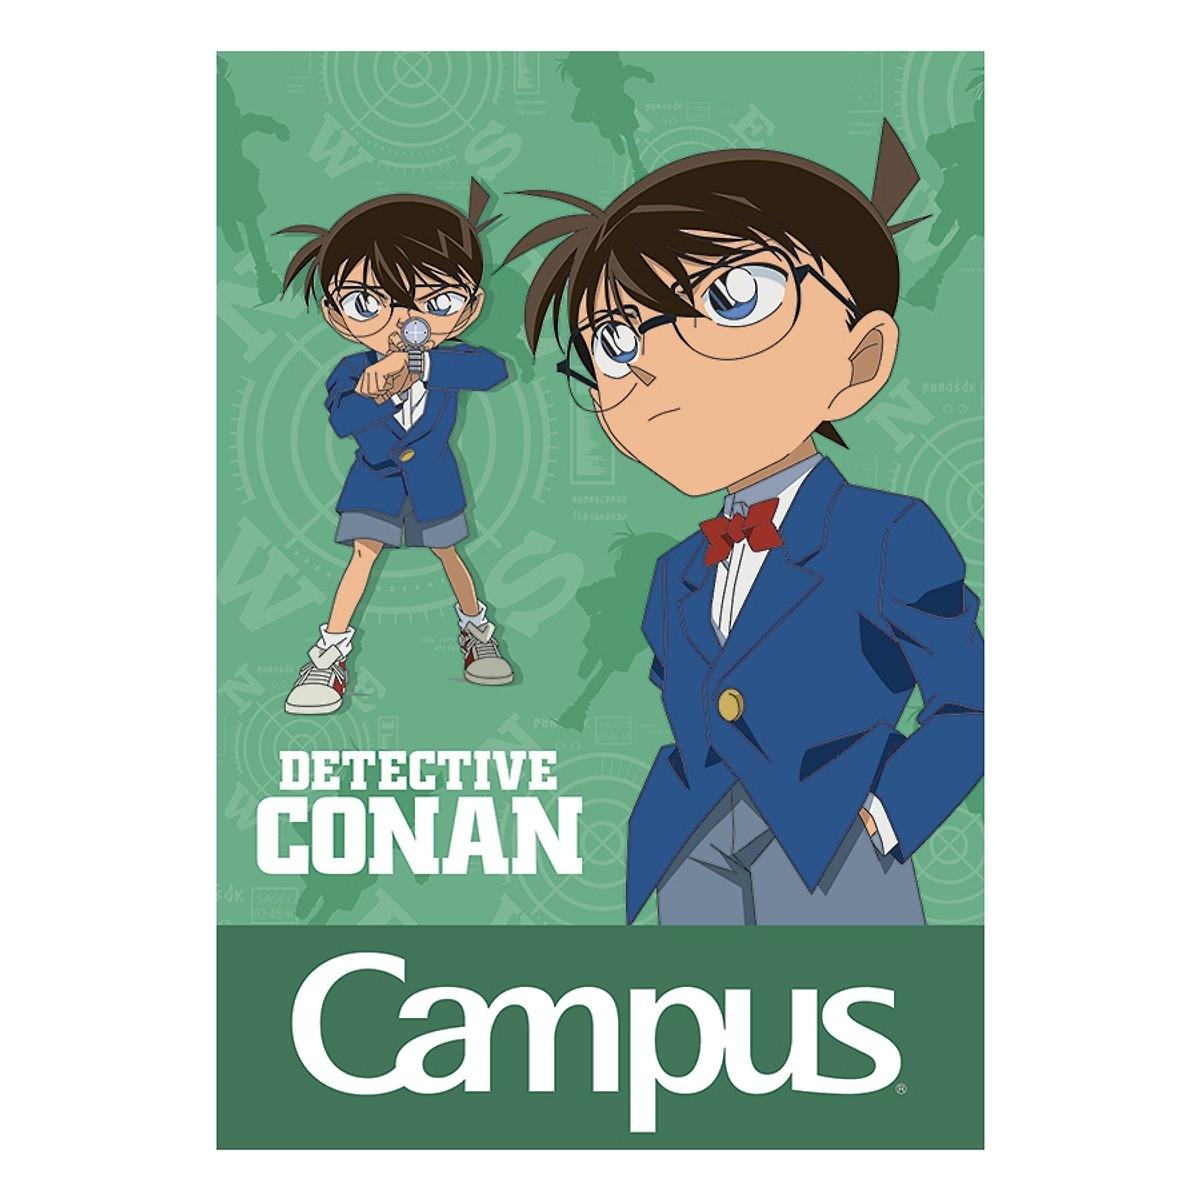 Vở Conan Mystery - B5 Kẻ Ngang Có Chấm 200 Trang ĐL 70g/m2 - Campus NB-BCNM200 (Mẫu Màu Giao Ngẫu Nhiên)